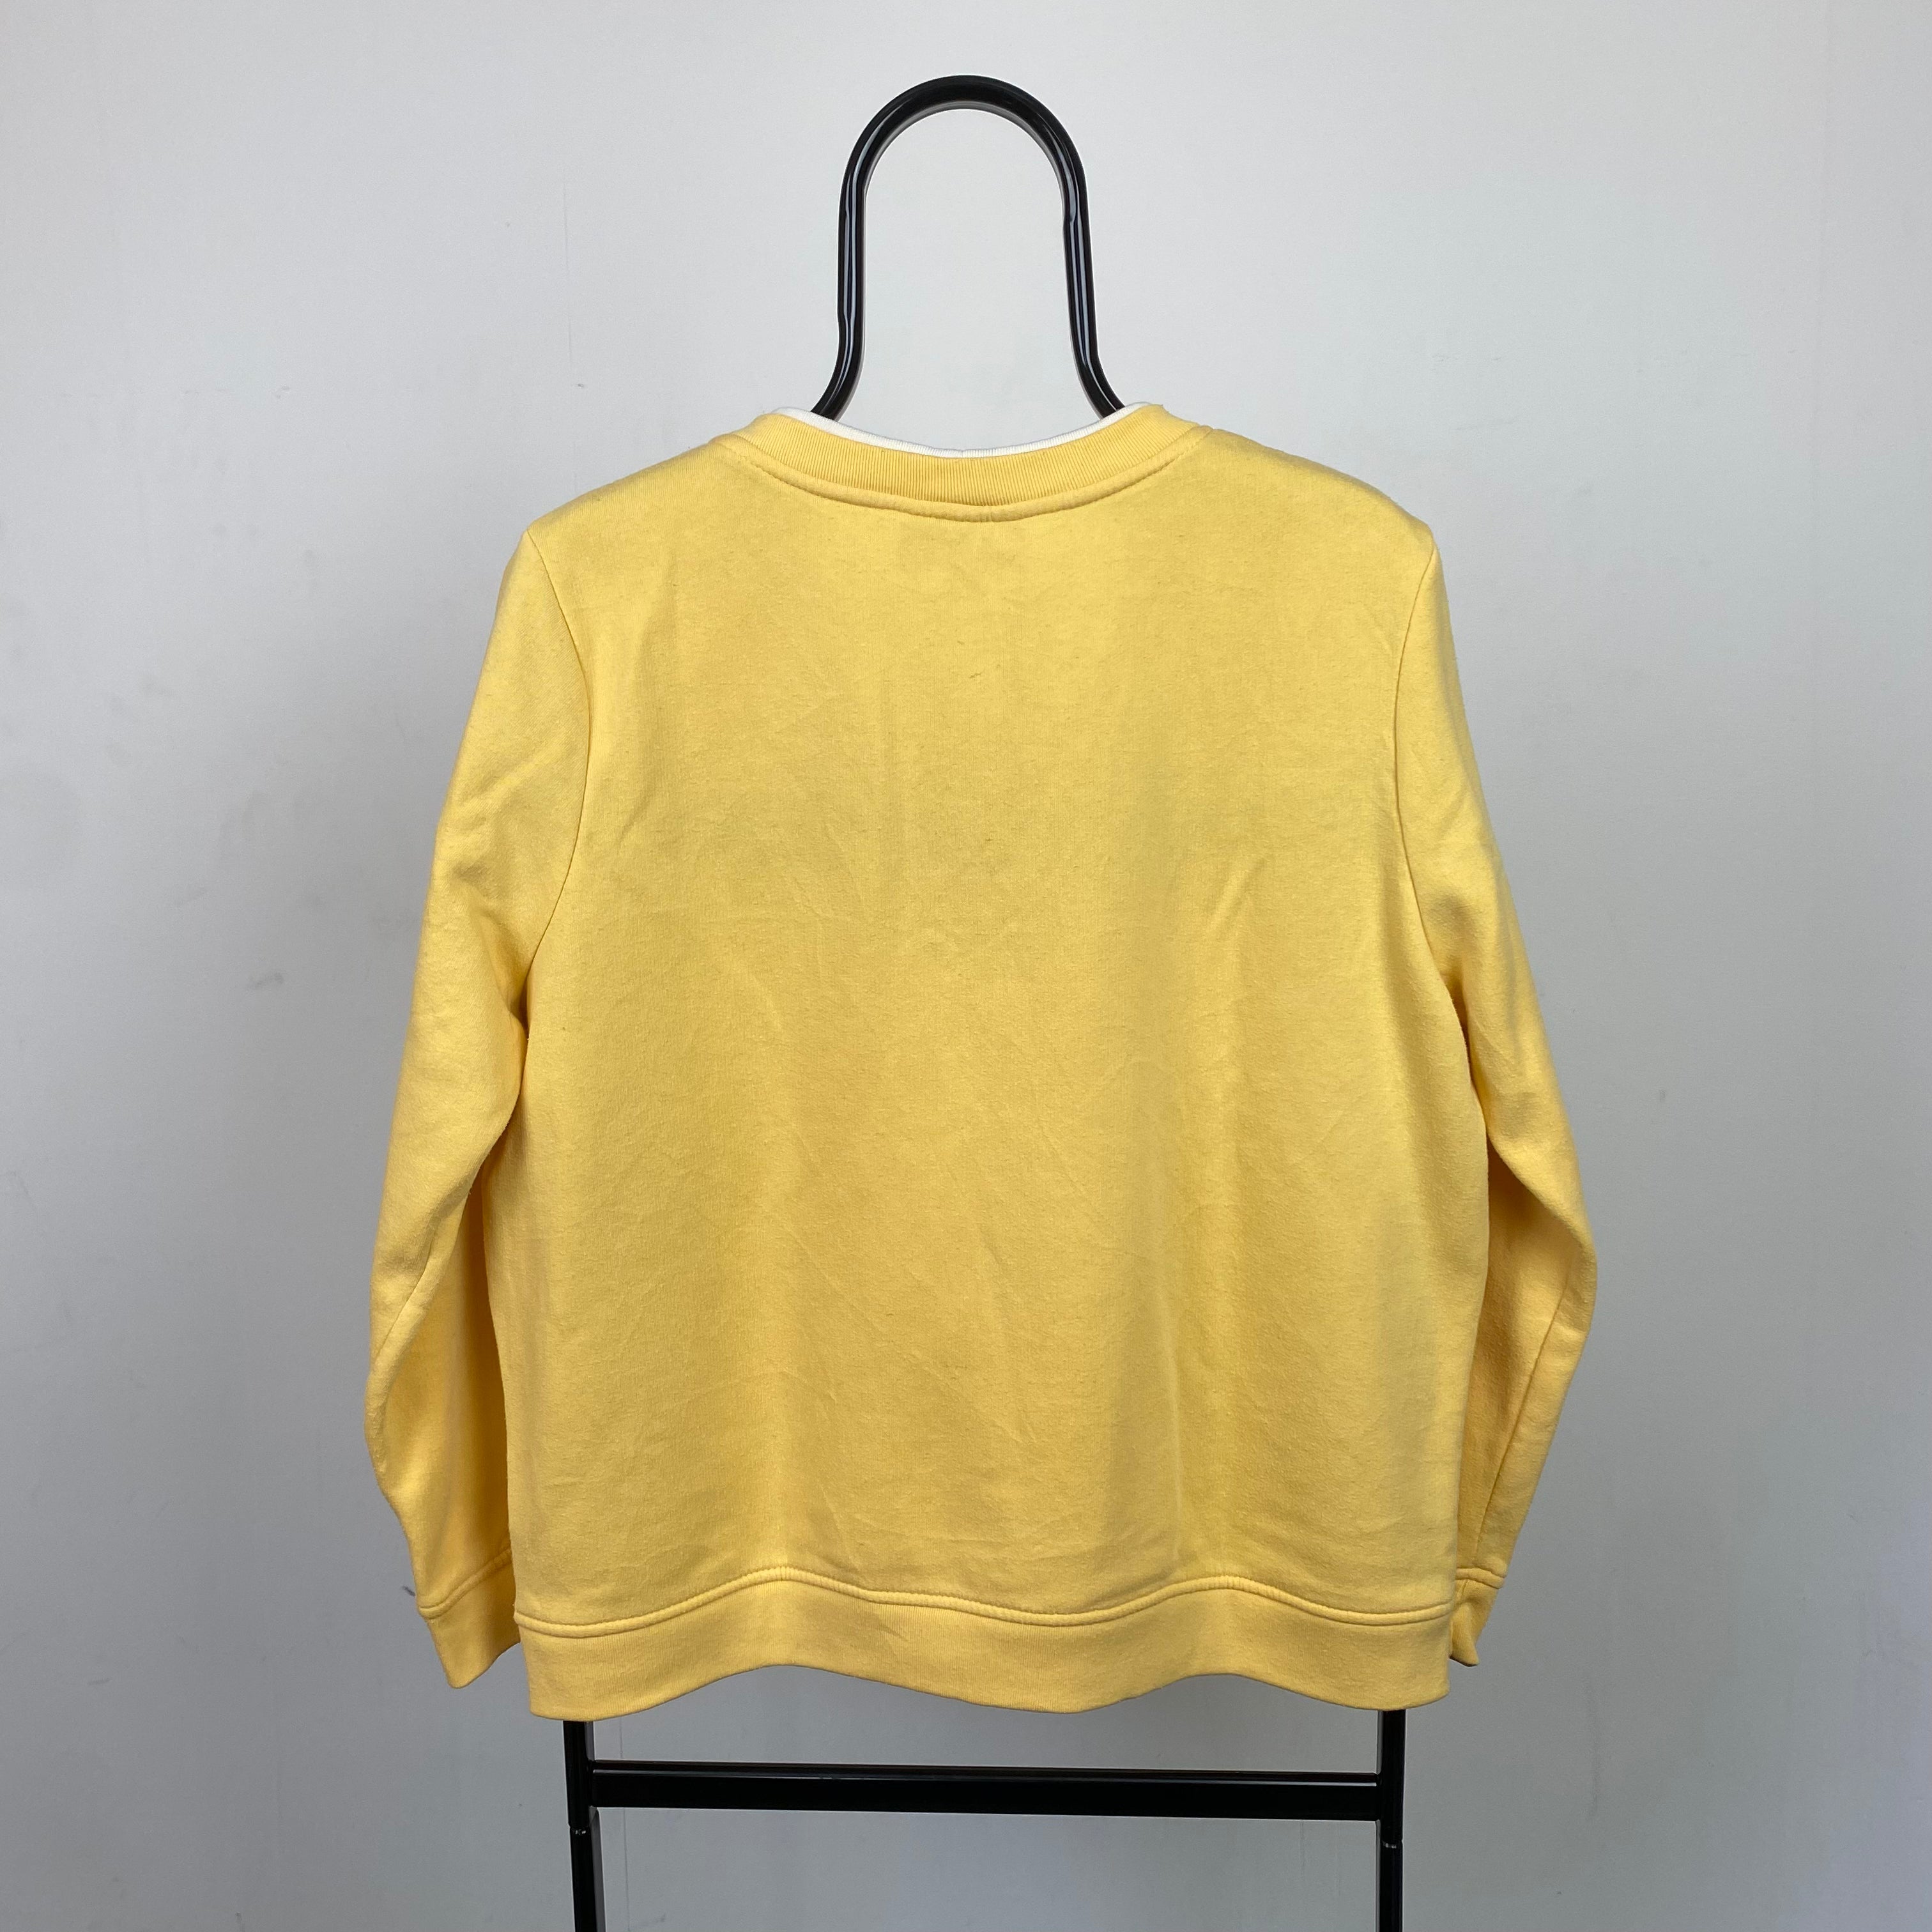 Retro 90s Flower Sweatshirt Yellow Medium